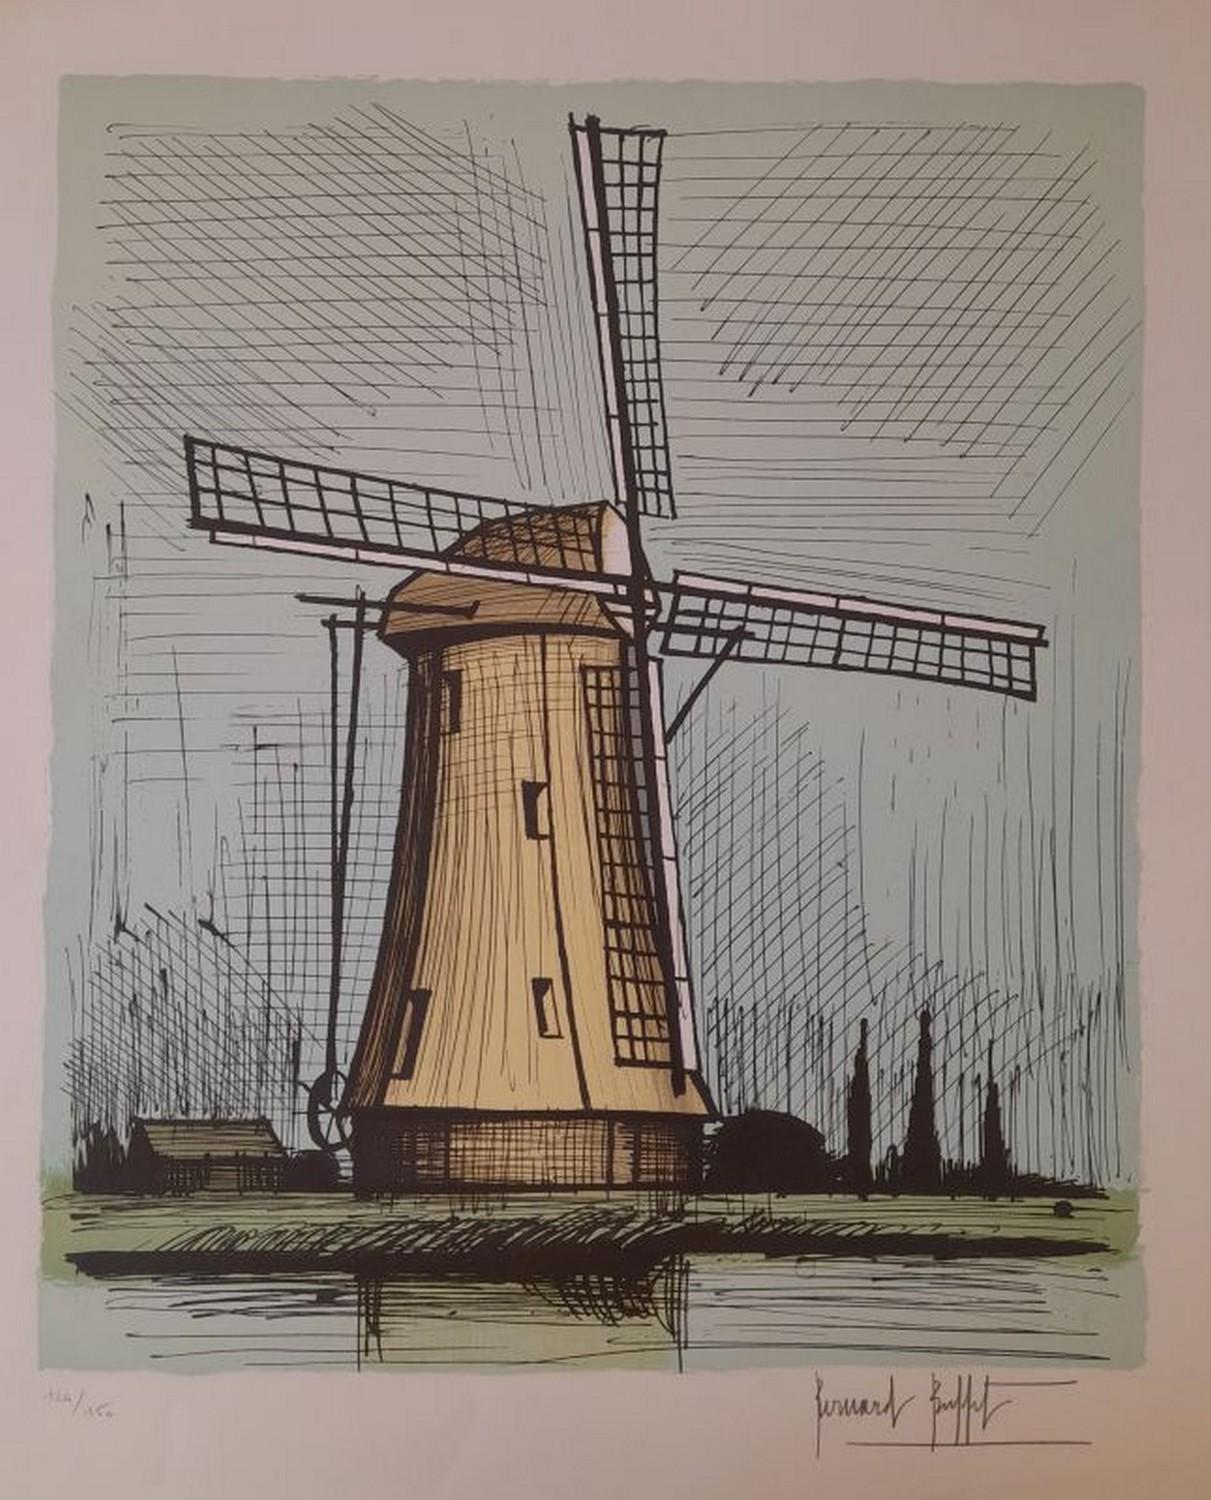 Bernard Buffet Abstract Print - Dutch windmill 